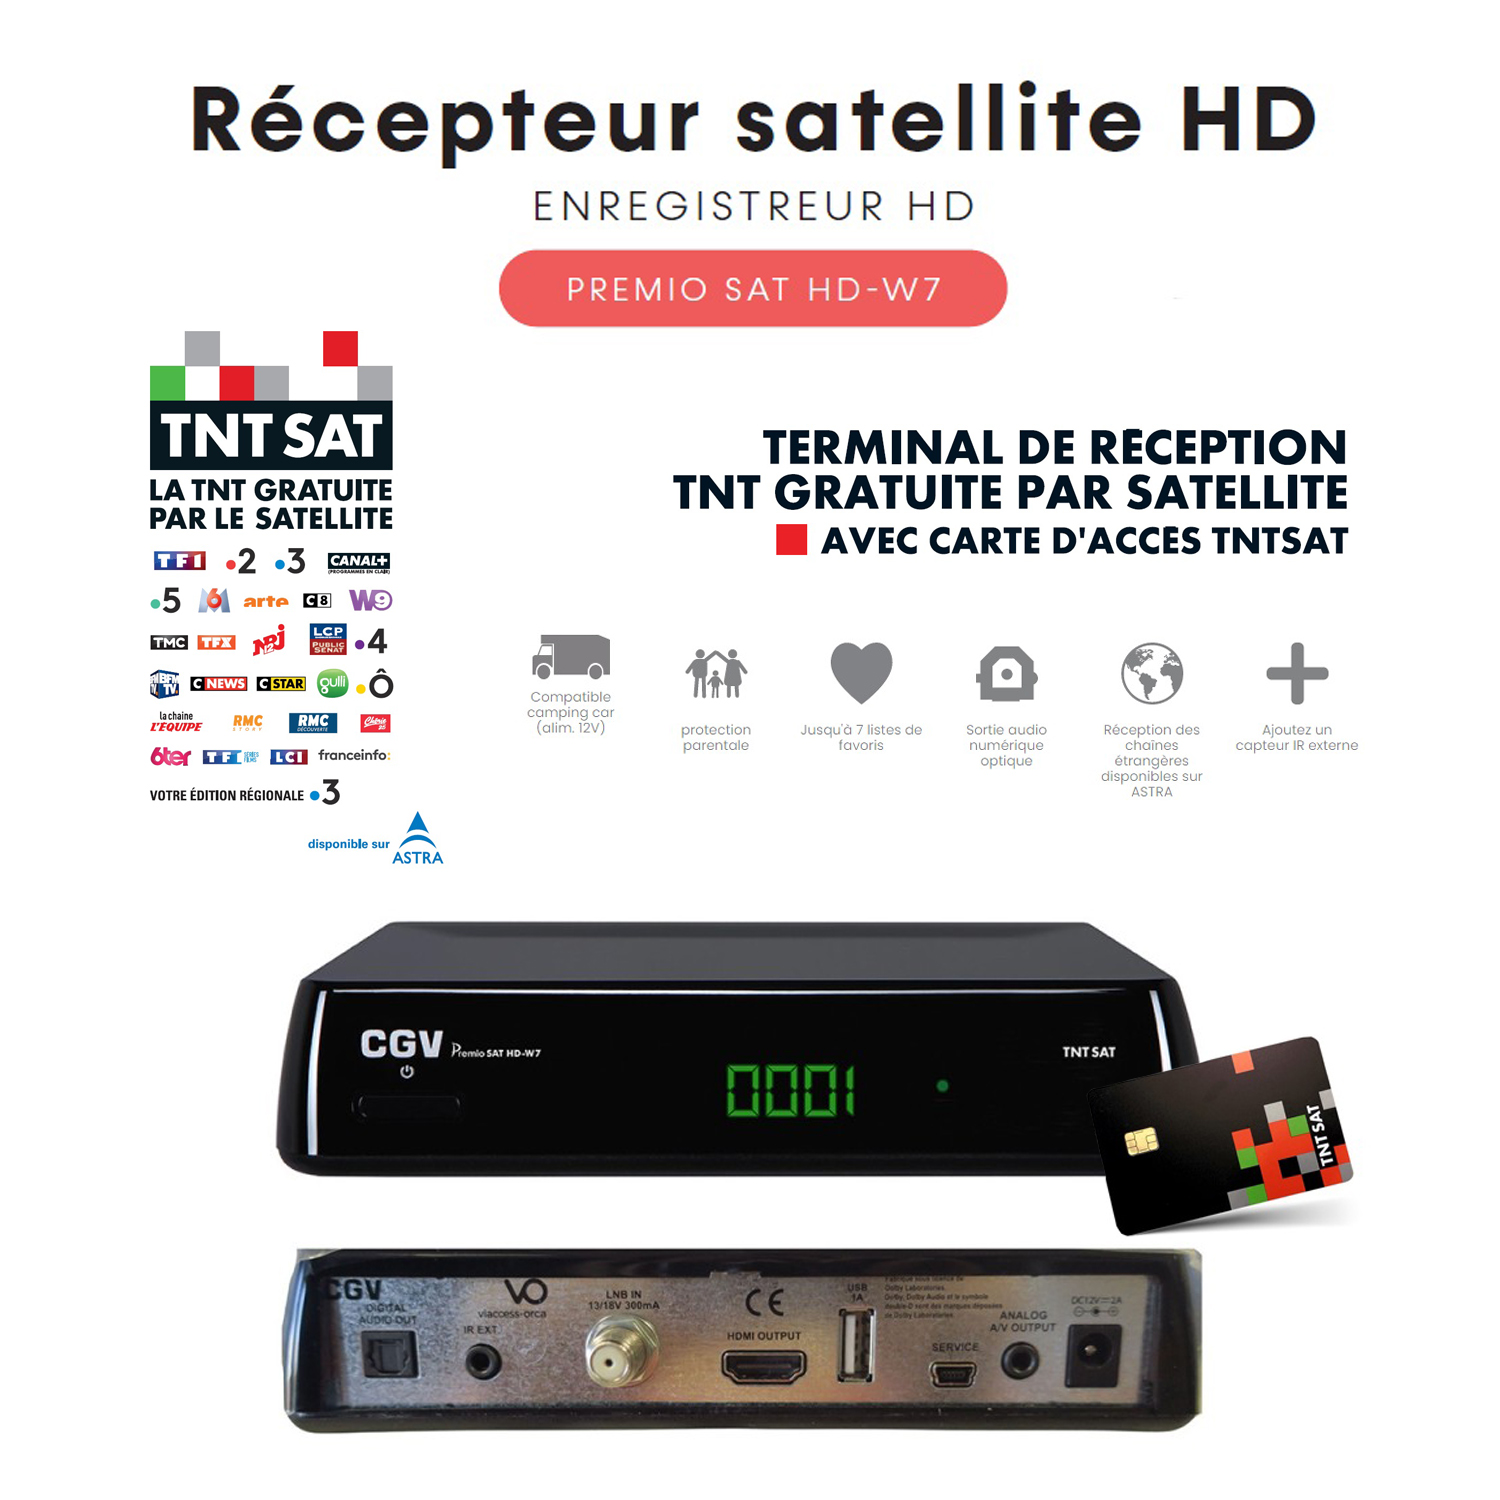 Rcepteur Satellite HD CGV PREMIO SAT HD W7 TNTSAT - Contrle du direct, Timer, Enregistreur, 12V, chanes trangres TNT sur ASTRA